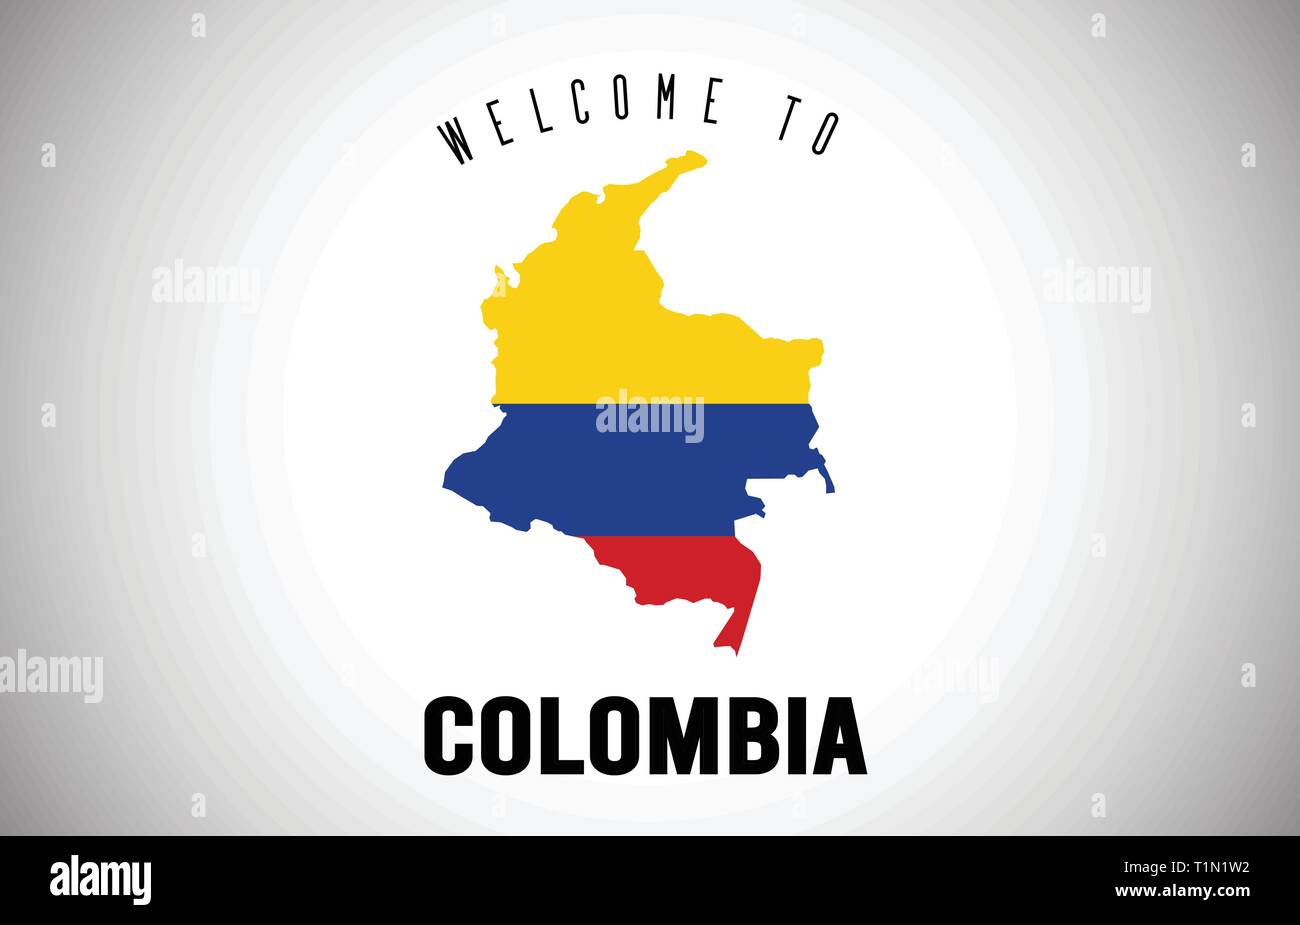 Colombie Bienvenue sur Texte et drapeau du pays à l'intérieur des frontières du pays. Carte de l'Uruguay avec drapeau national Design Vector Illustration. Illustration de Vecteur